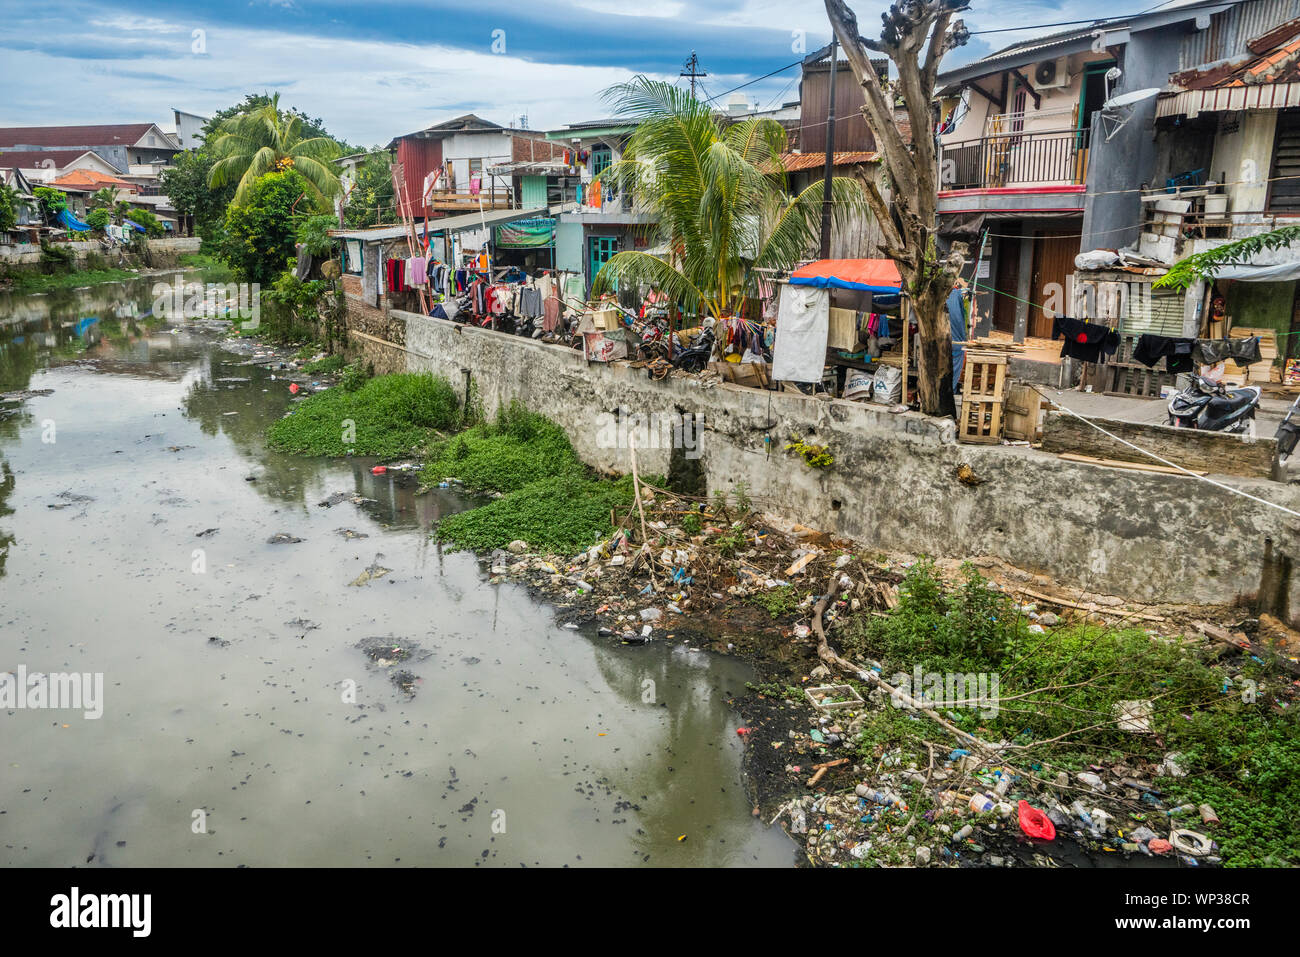 Badly polluted Semarang River at Semarang Chinatown, Central Java, Indonesia Stock Photo